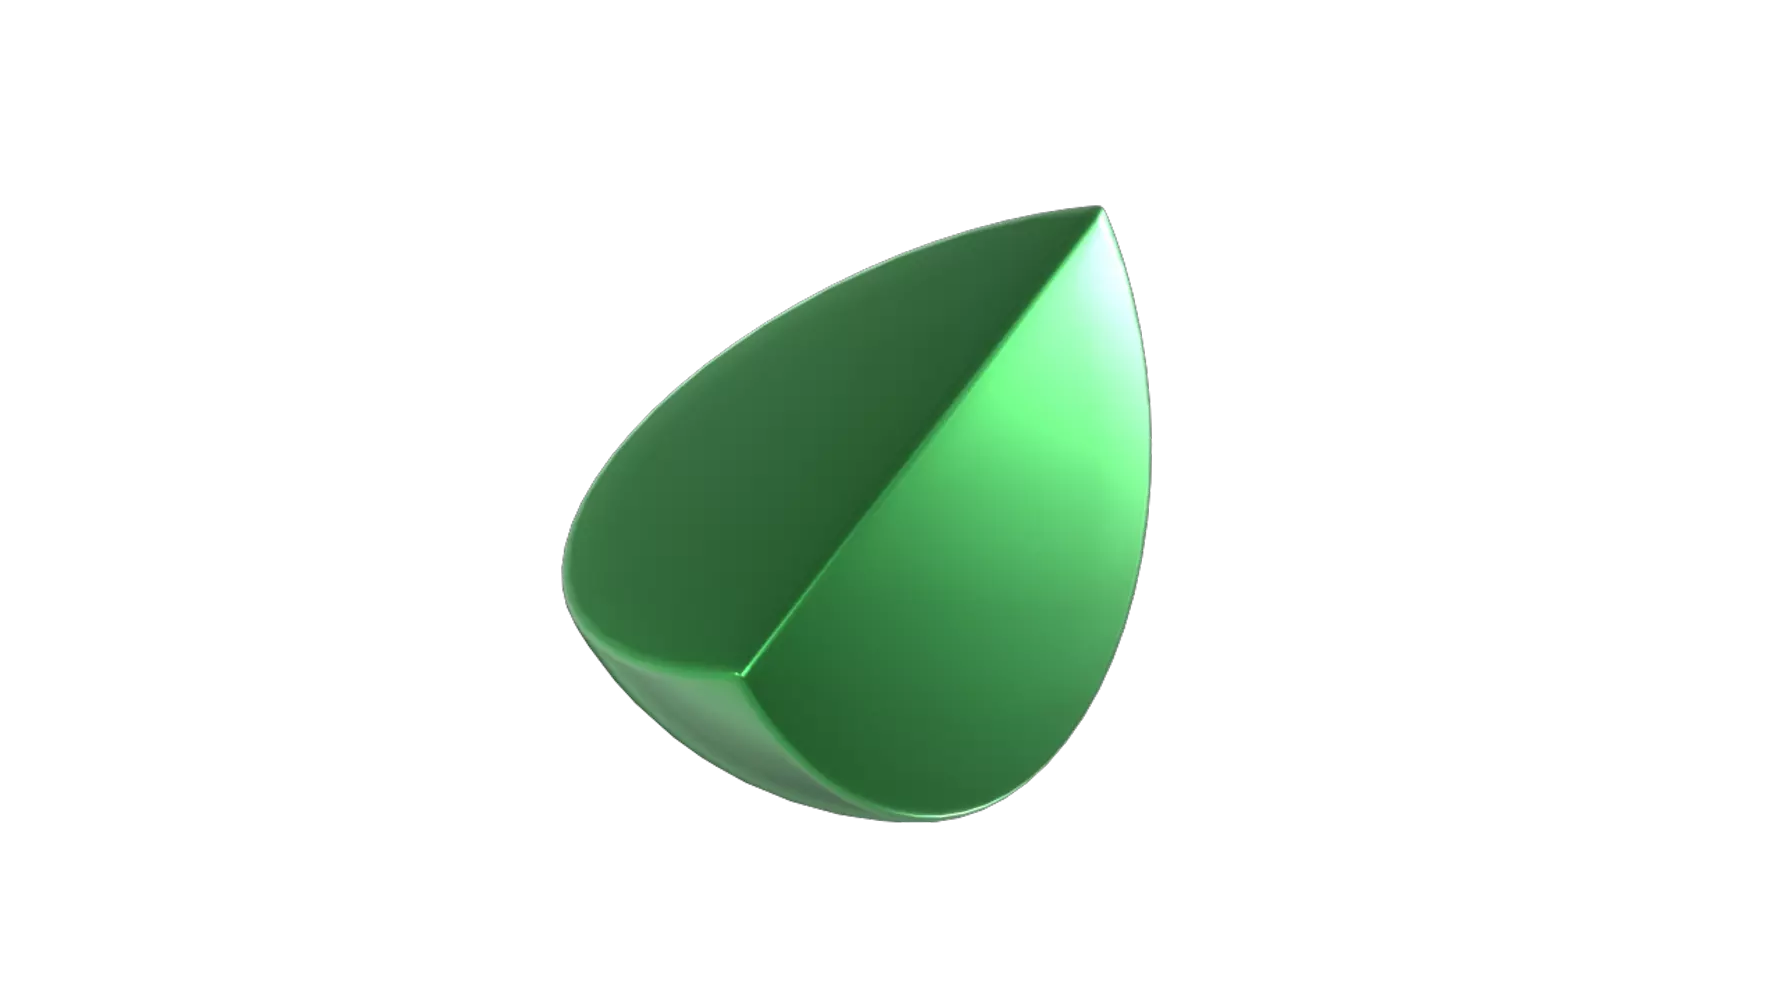 Quarter Sphere 3D Graphic